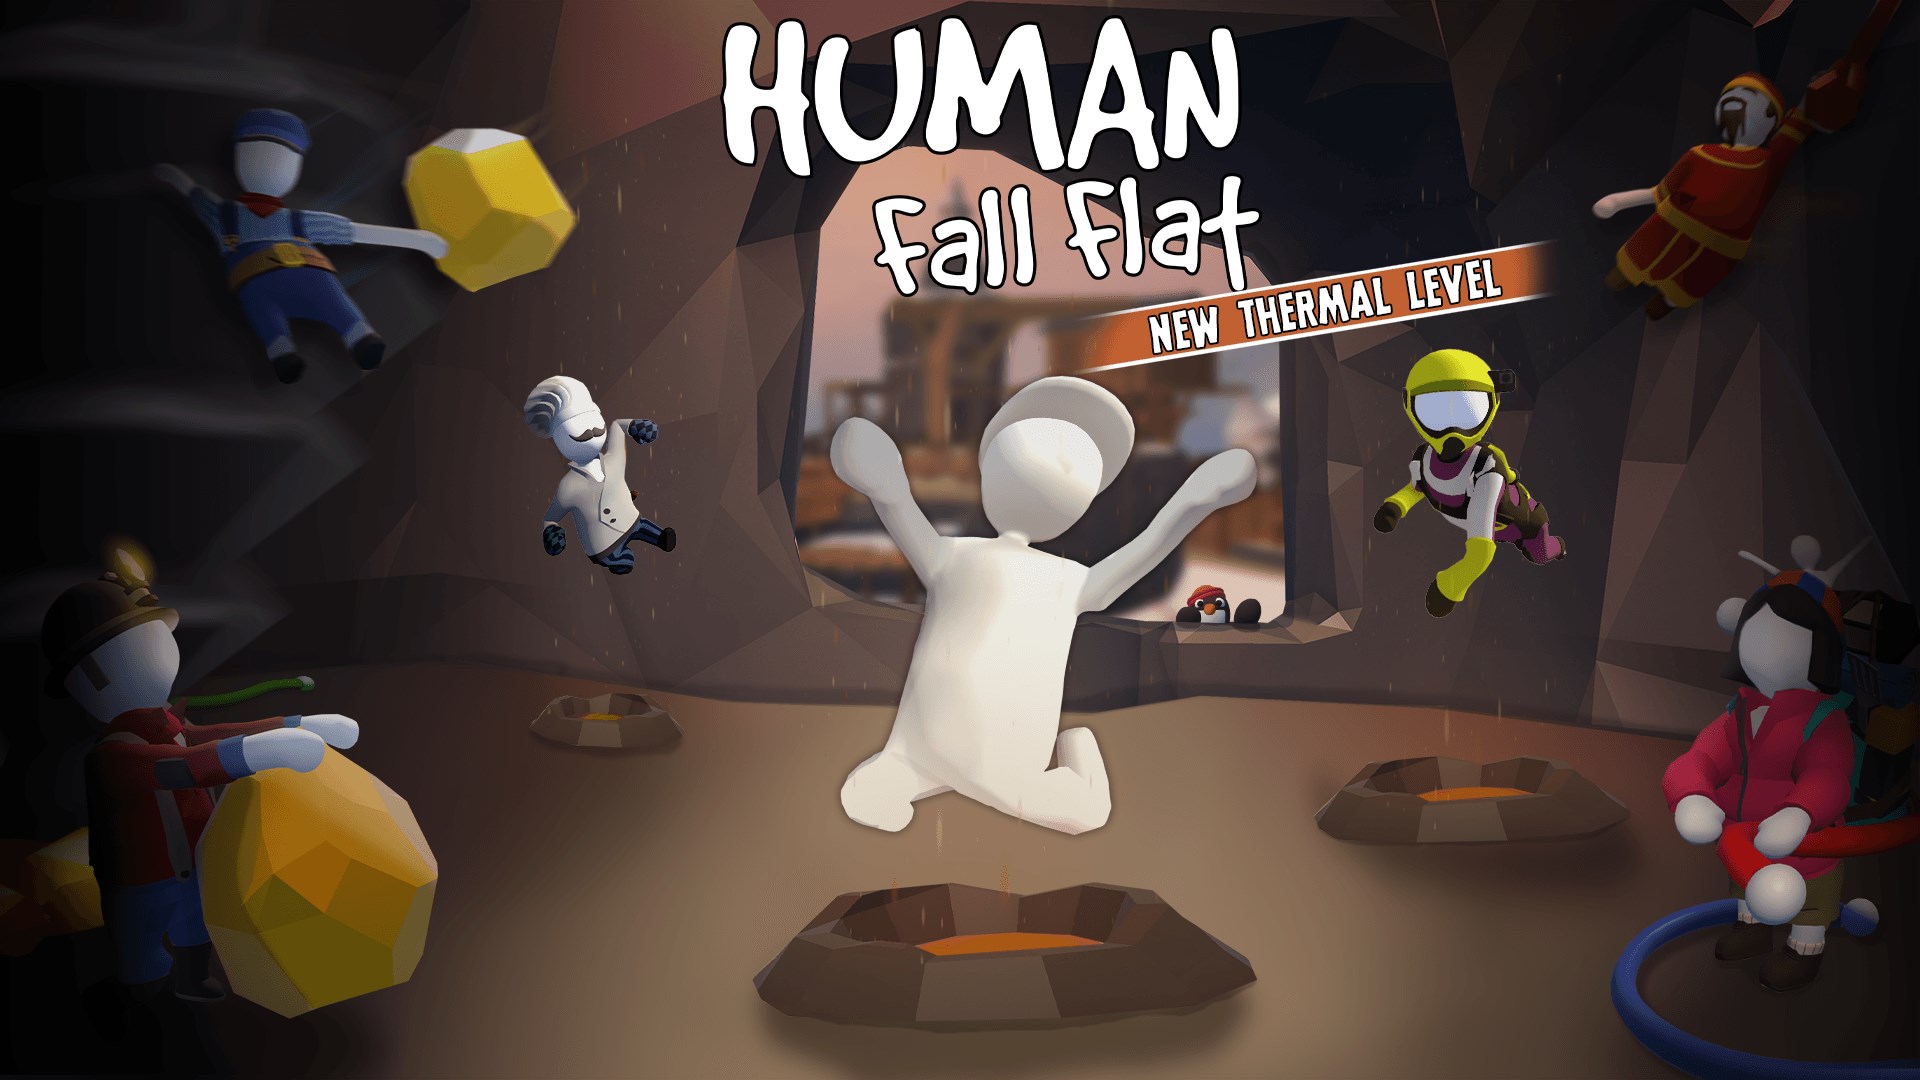 human fall flat xbox online